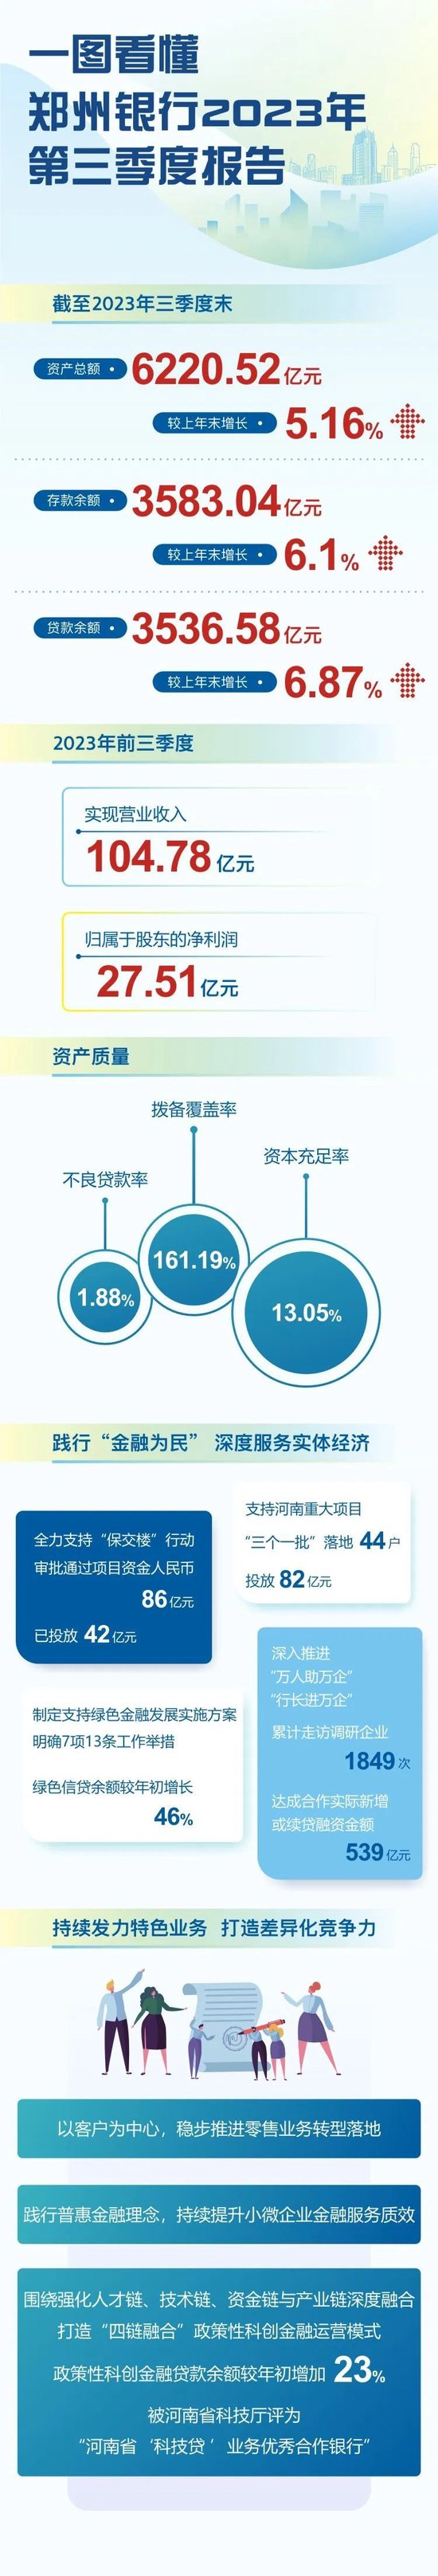 一图看懂丨郑州银行2023年第三季度报告